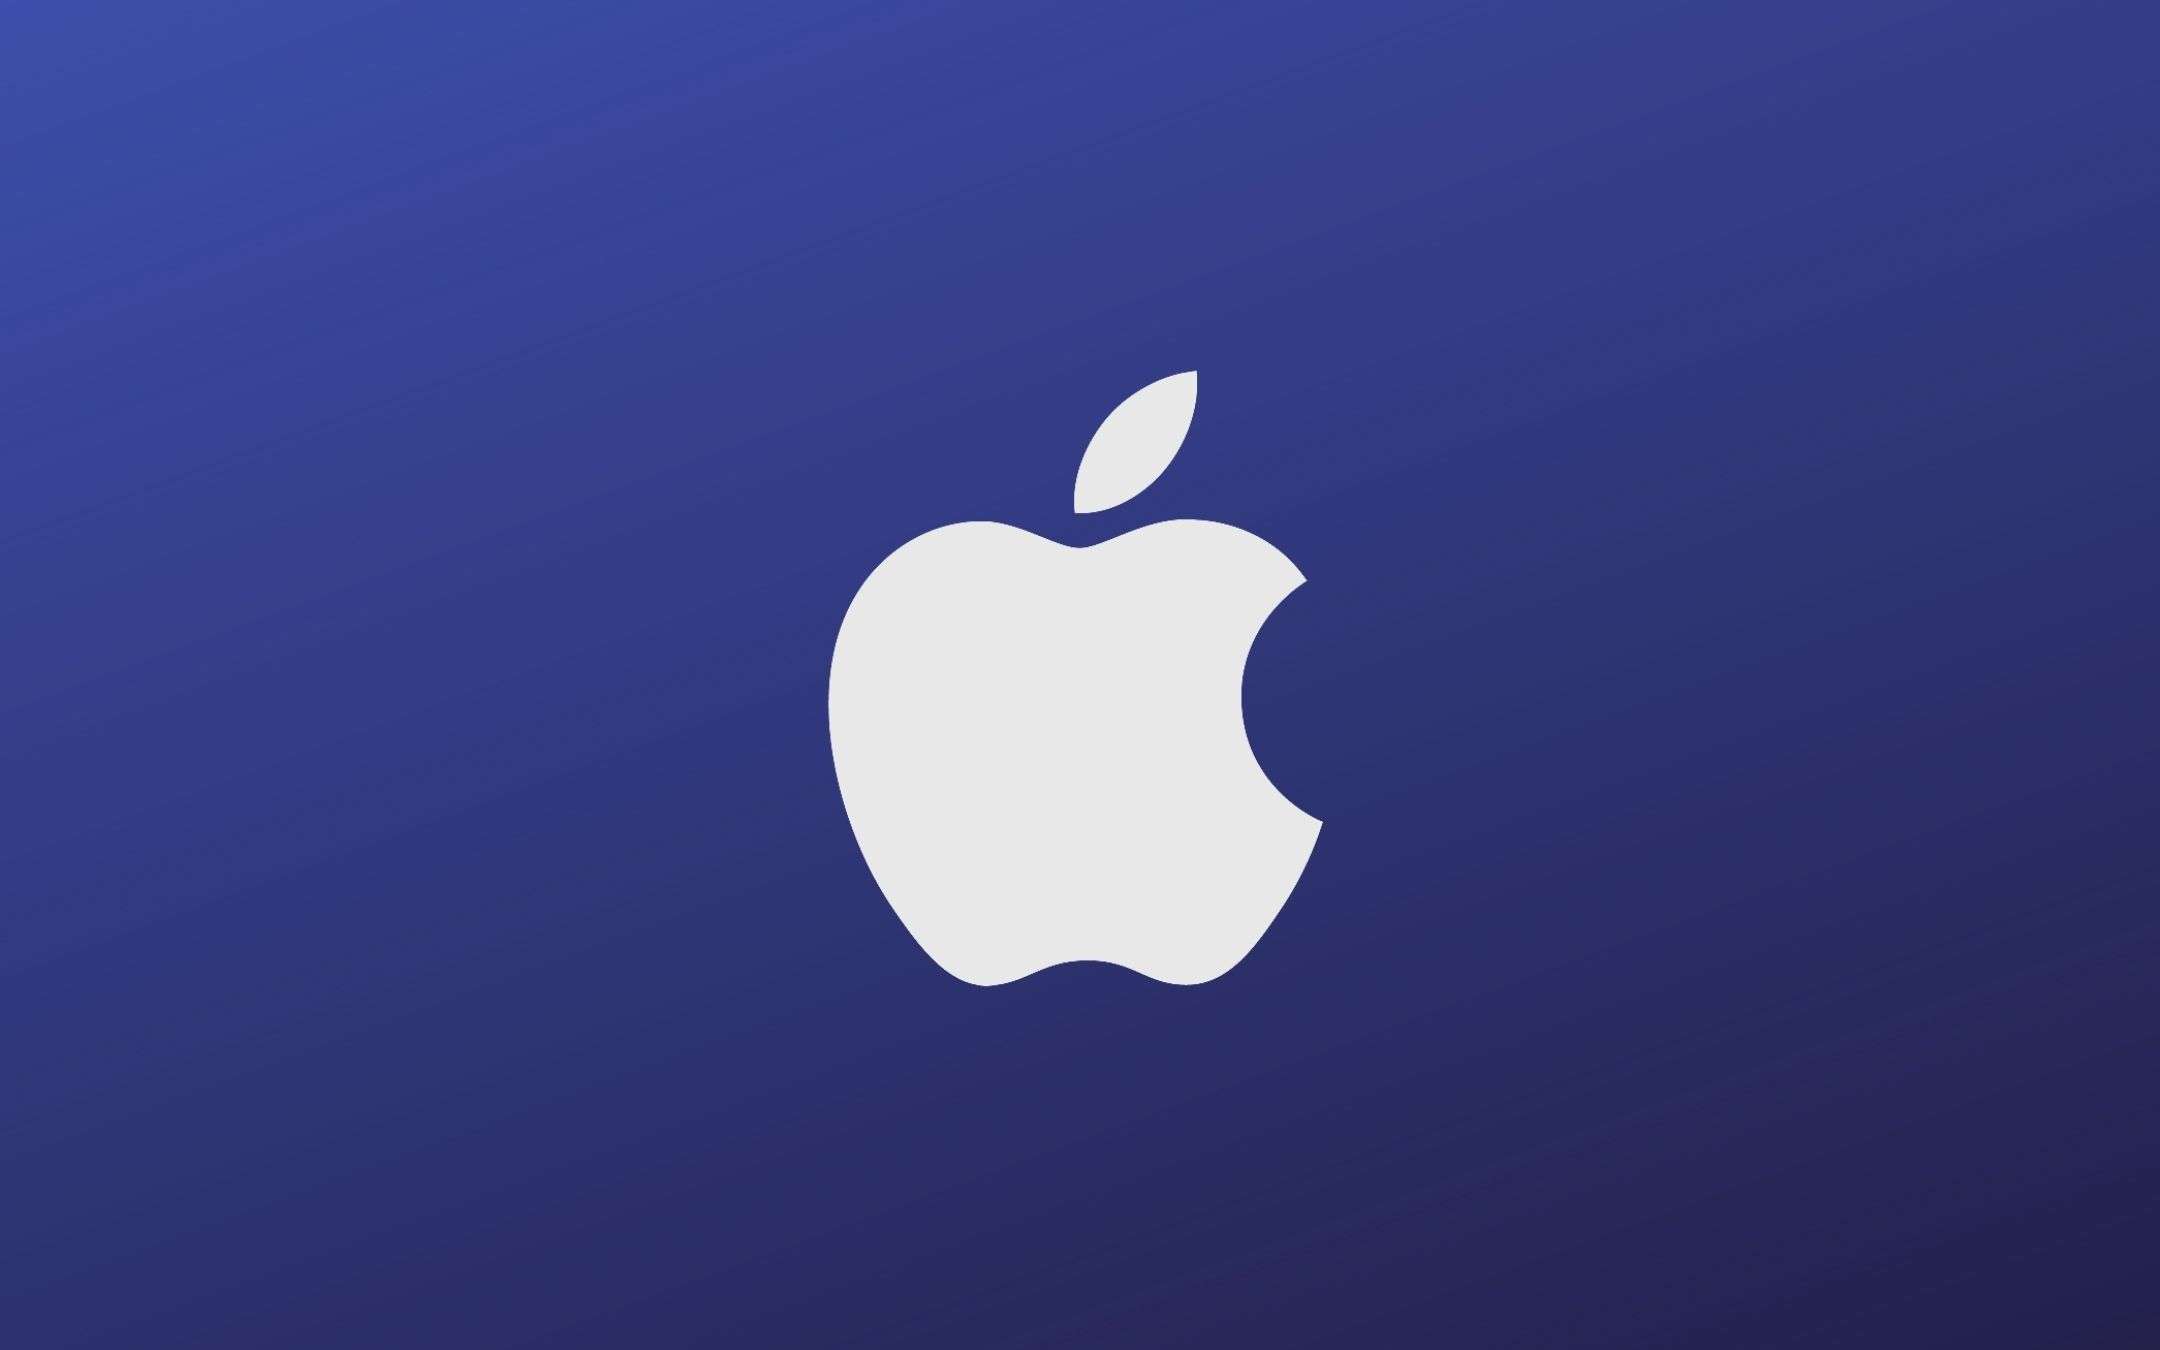 Apple rivela qual è l'iPhone più venduto